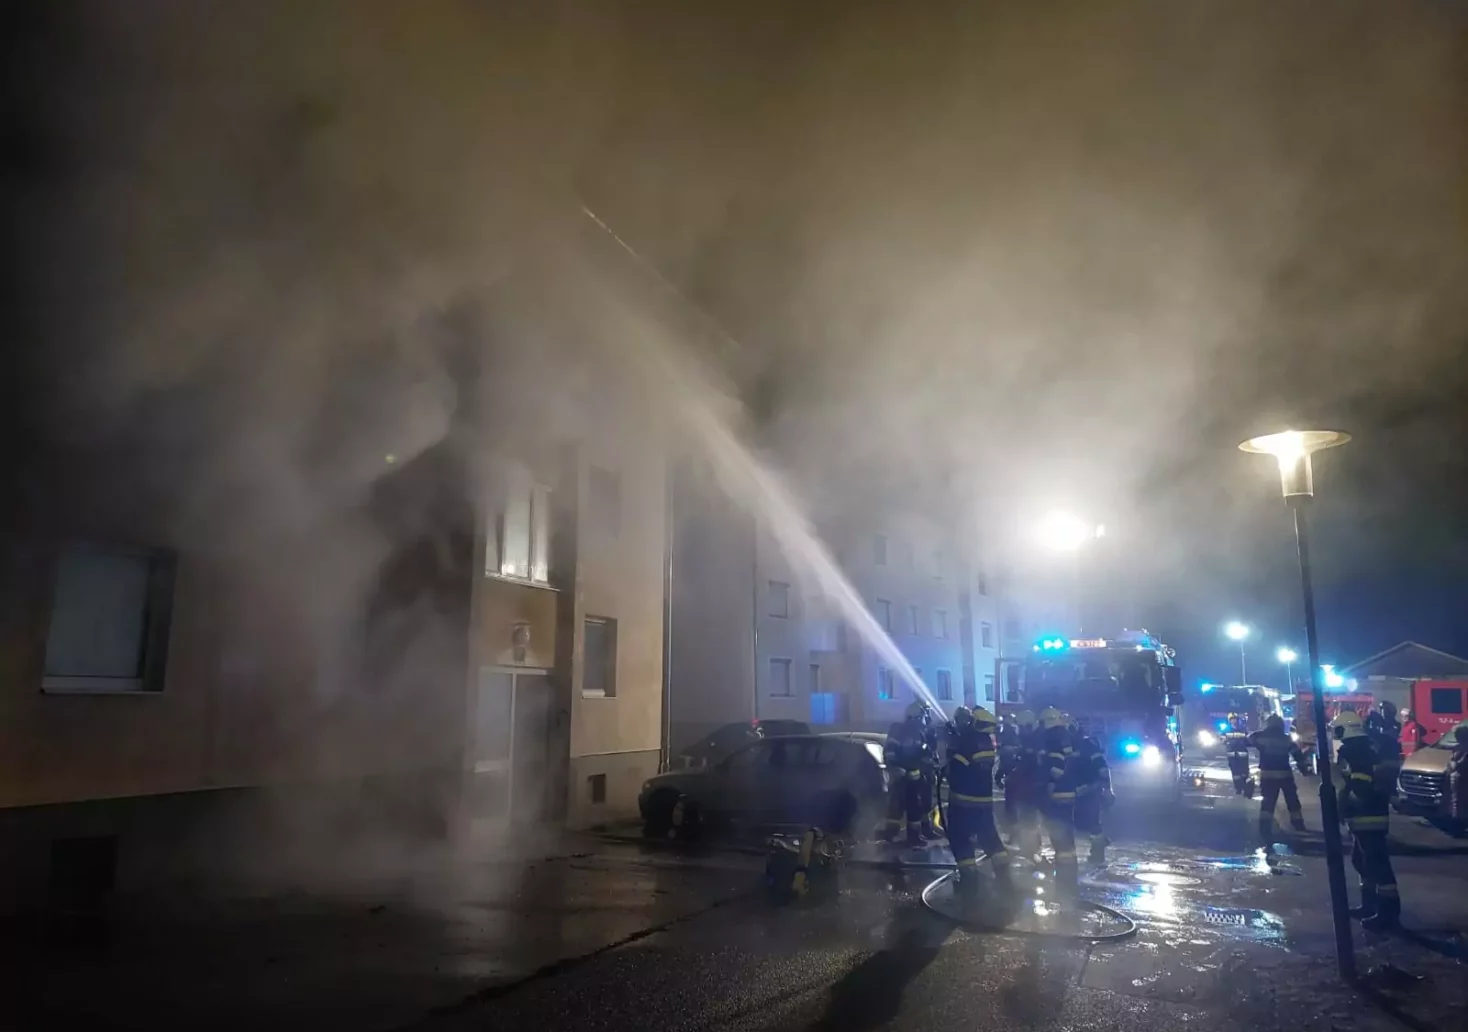 Wohnung in Vollbrand: Drei Personen verletzt